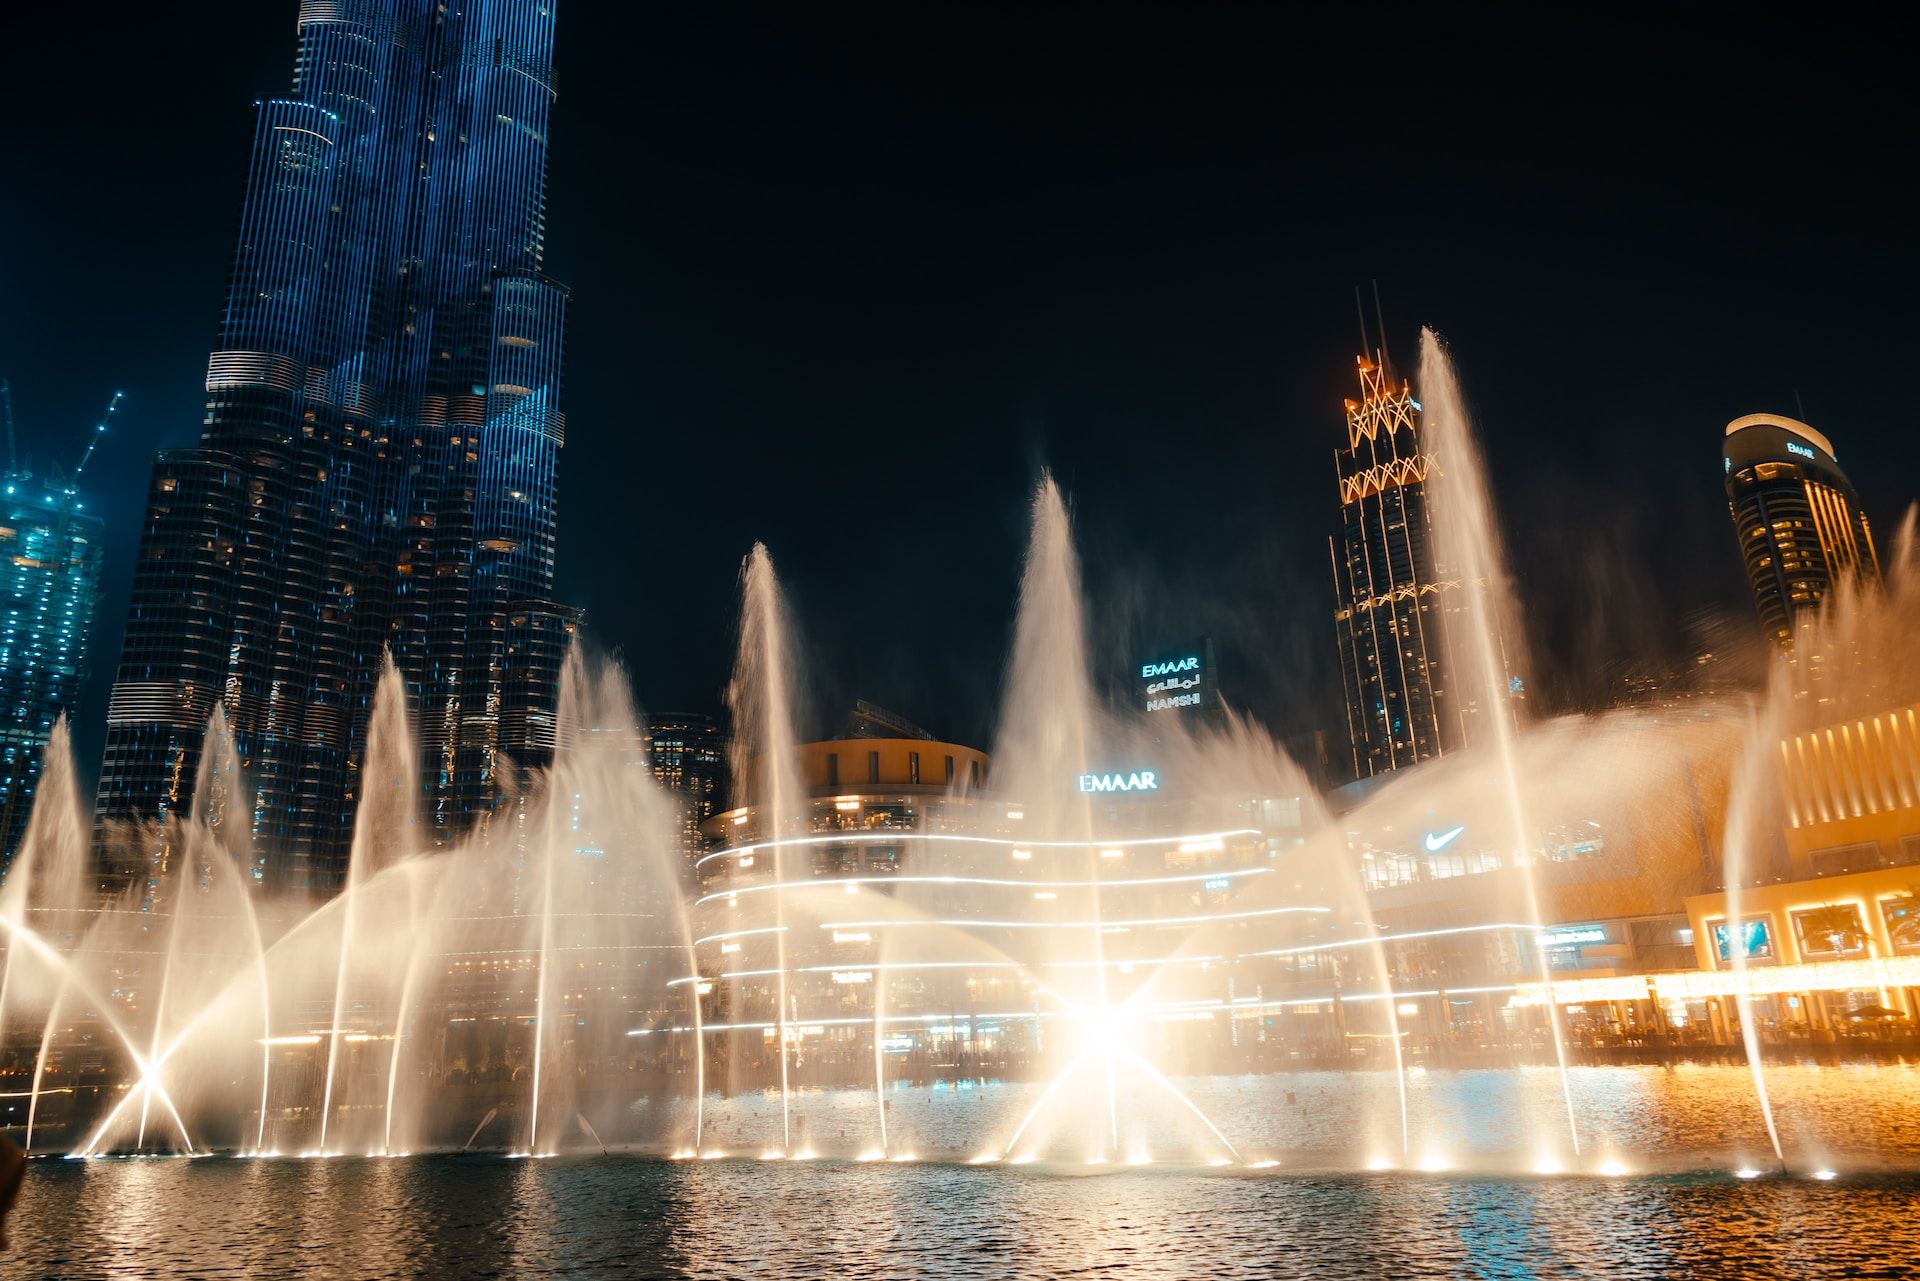 Dubai Fountain evening show